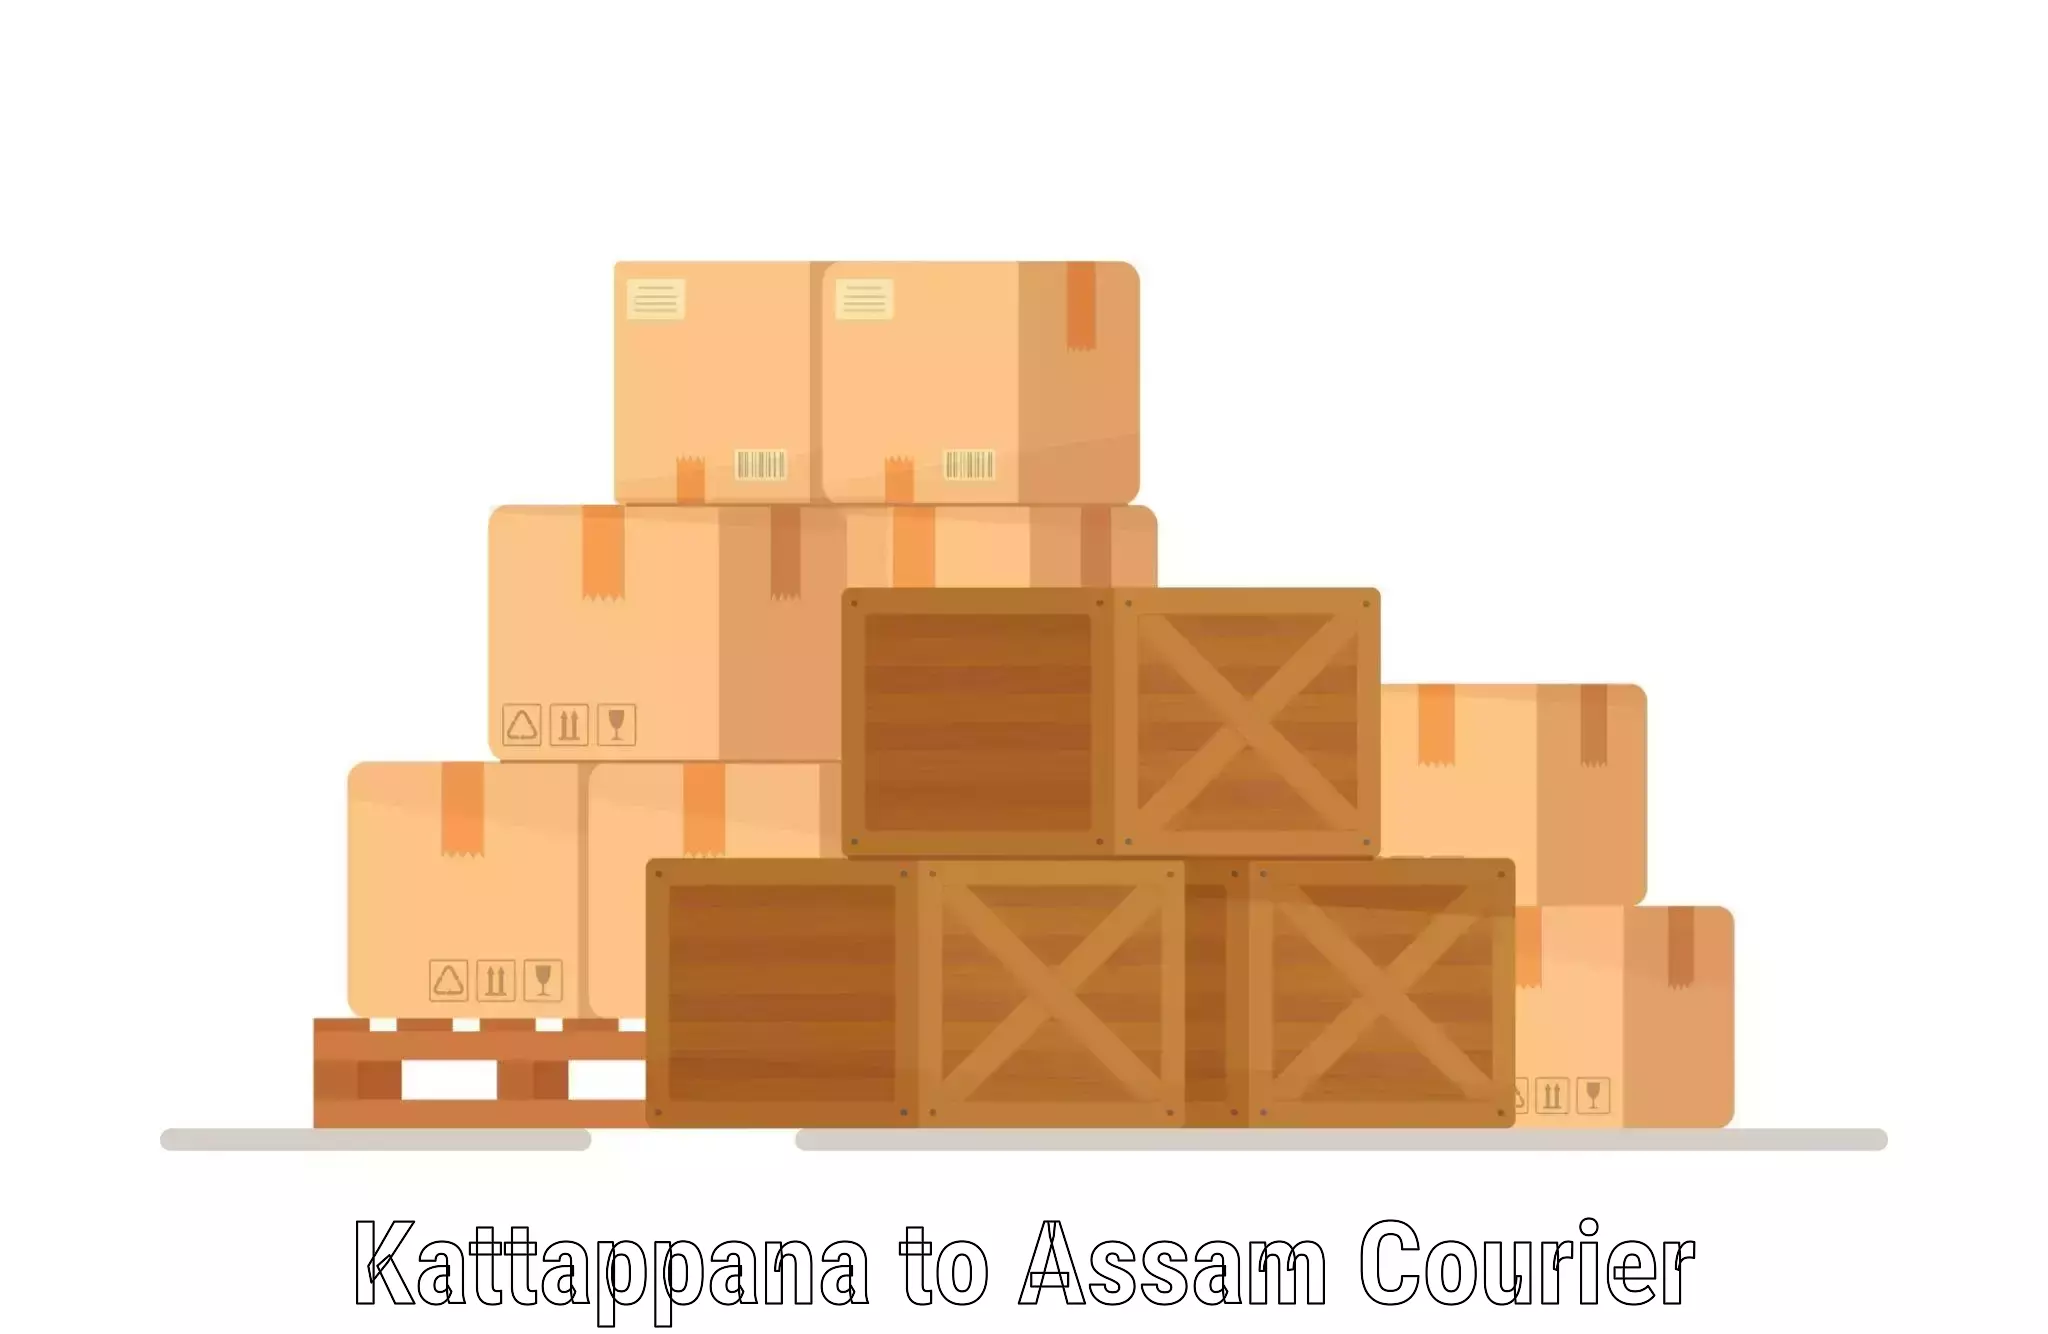 International courier rates Kattappana to Kalgachia